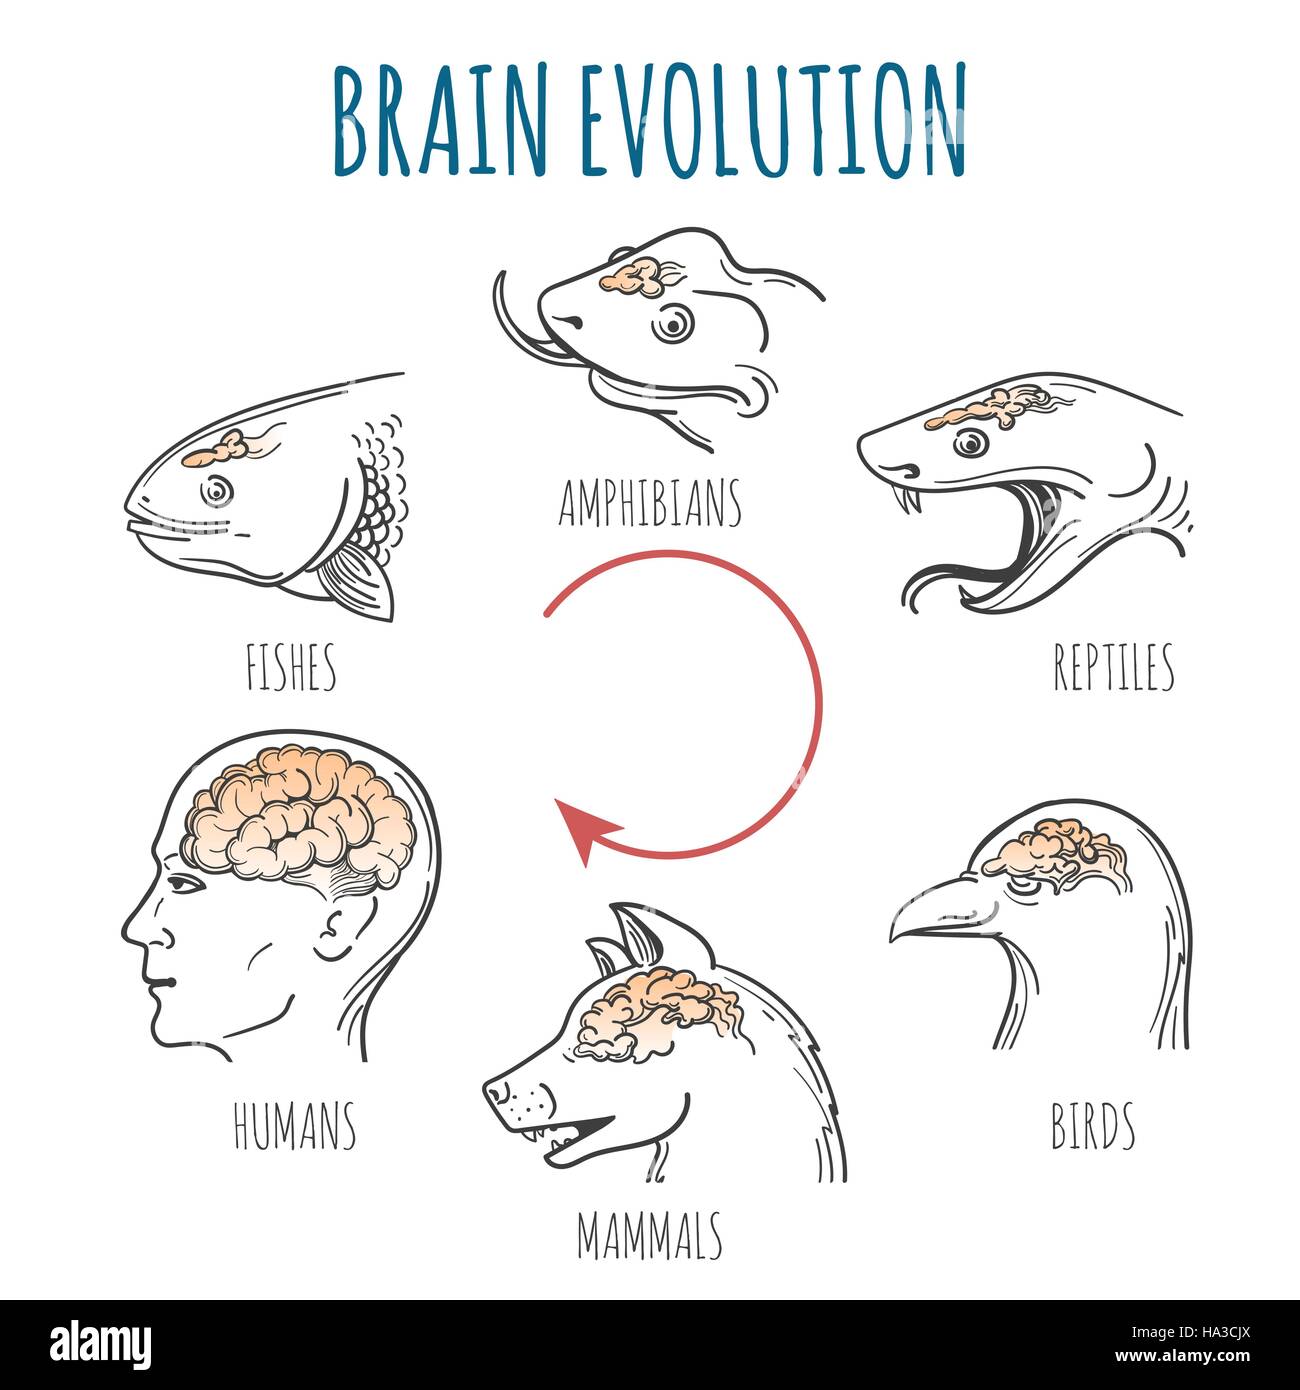 Gehirnentwicklung von den Fischen zum Menschen. Köpfe der Fische, Amphibien, Reptilien, Vogel, Hund und Homo Sapience. Vektor-Illustration. Stock Vektor